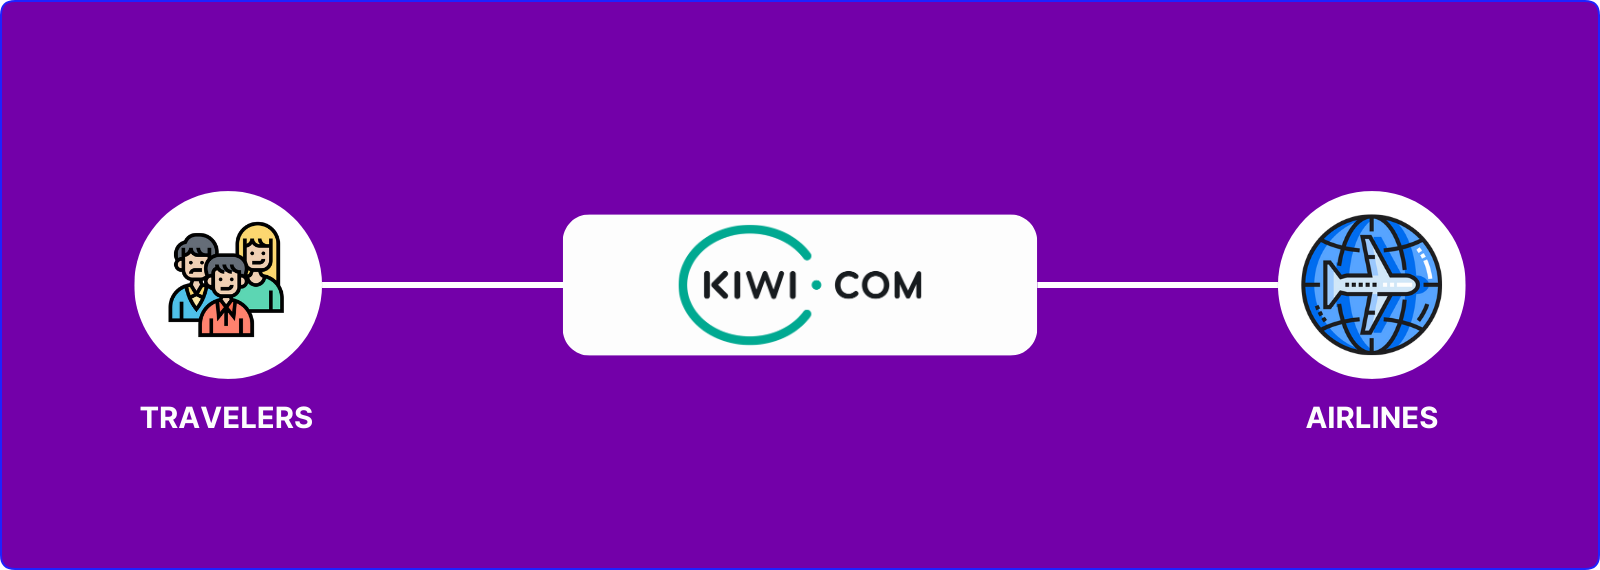 πώς λειτουργεί το Kiwi.com